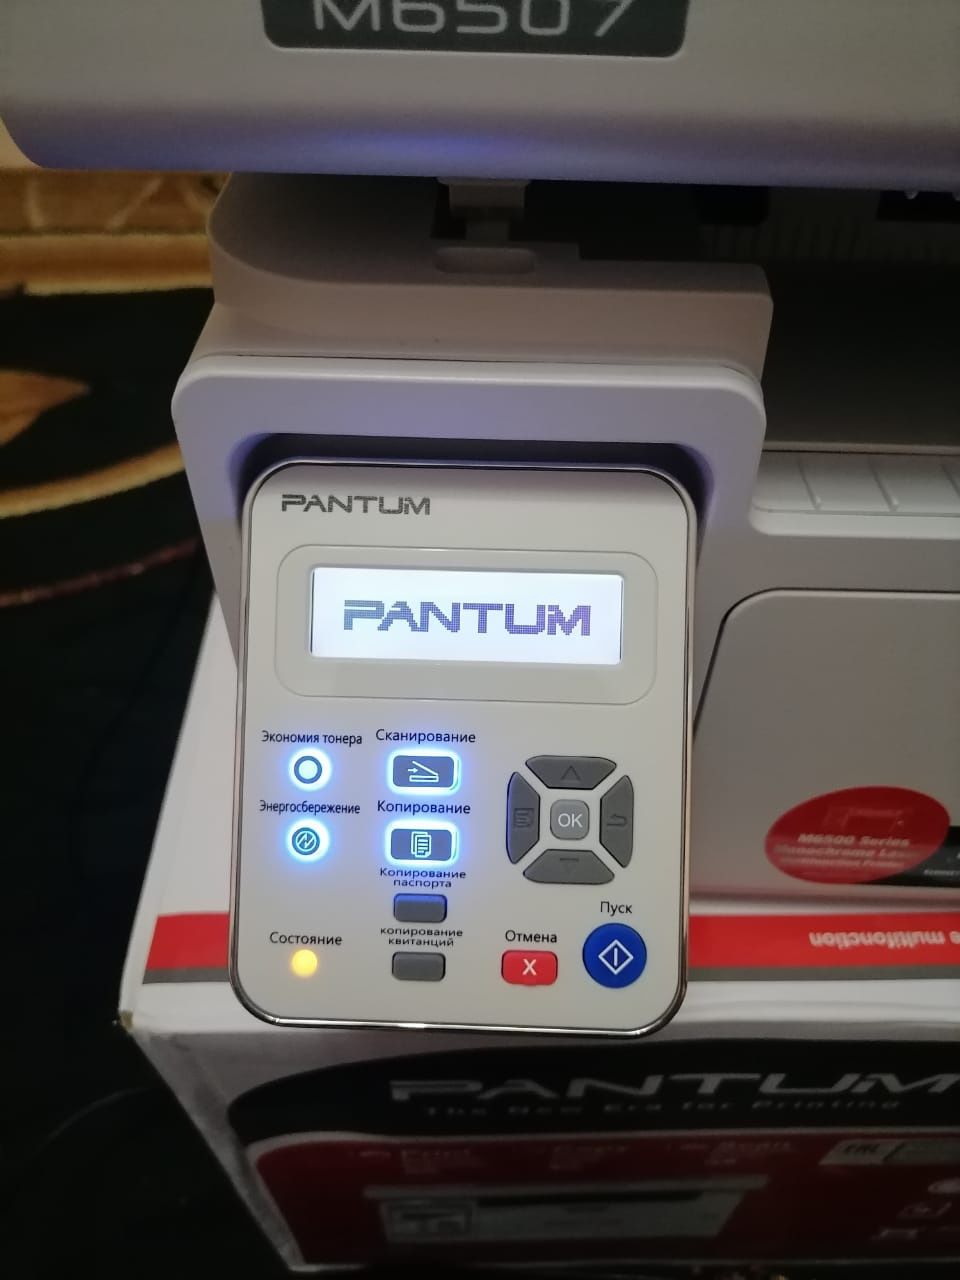 Продаётся принтер Pentum m6507